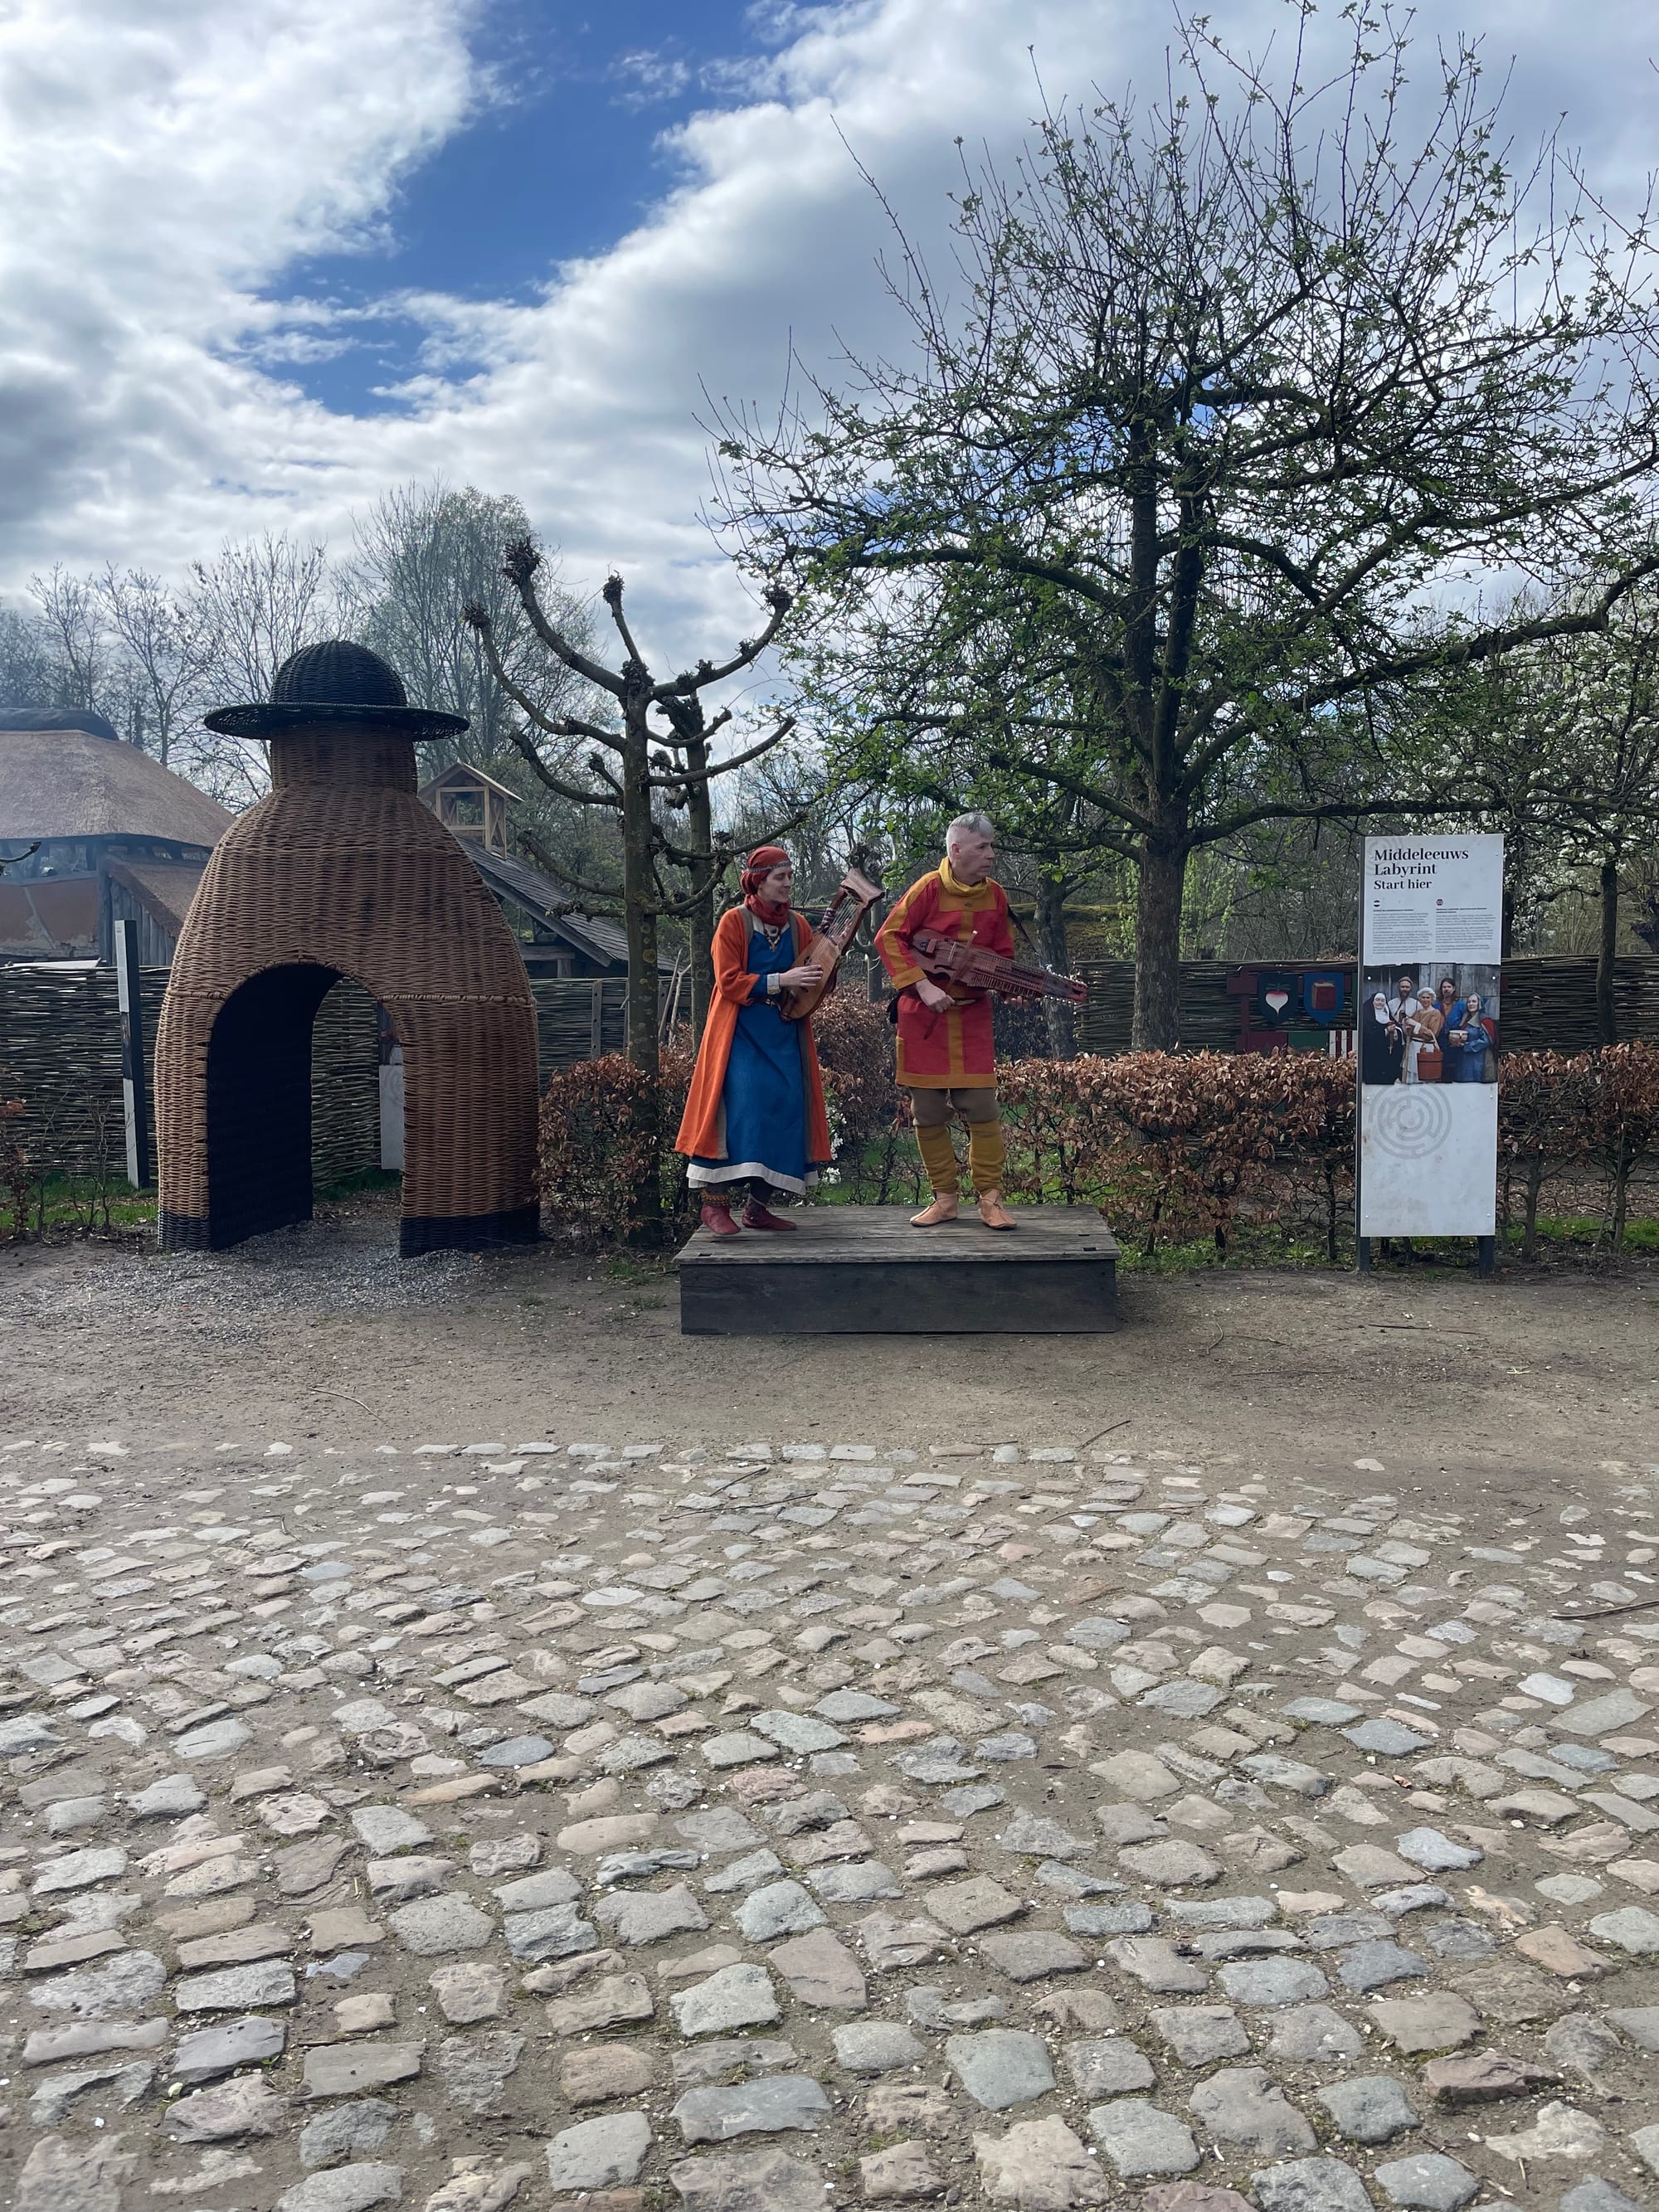 Bezoek aan preHistorisch Dorp in Eindhoven, onze ervaring